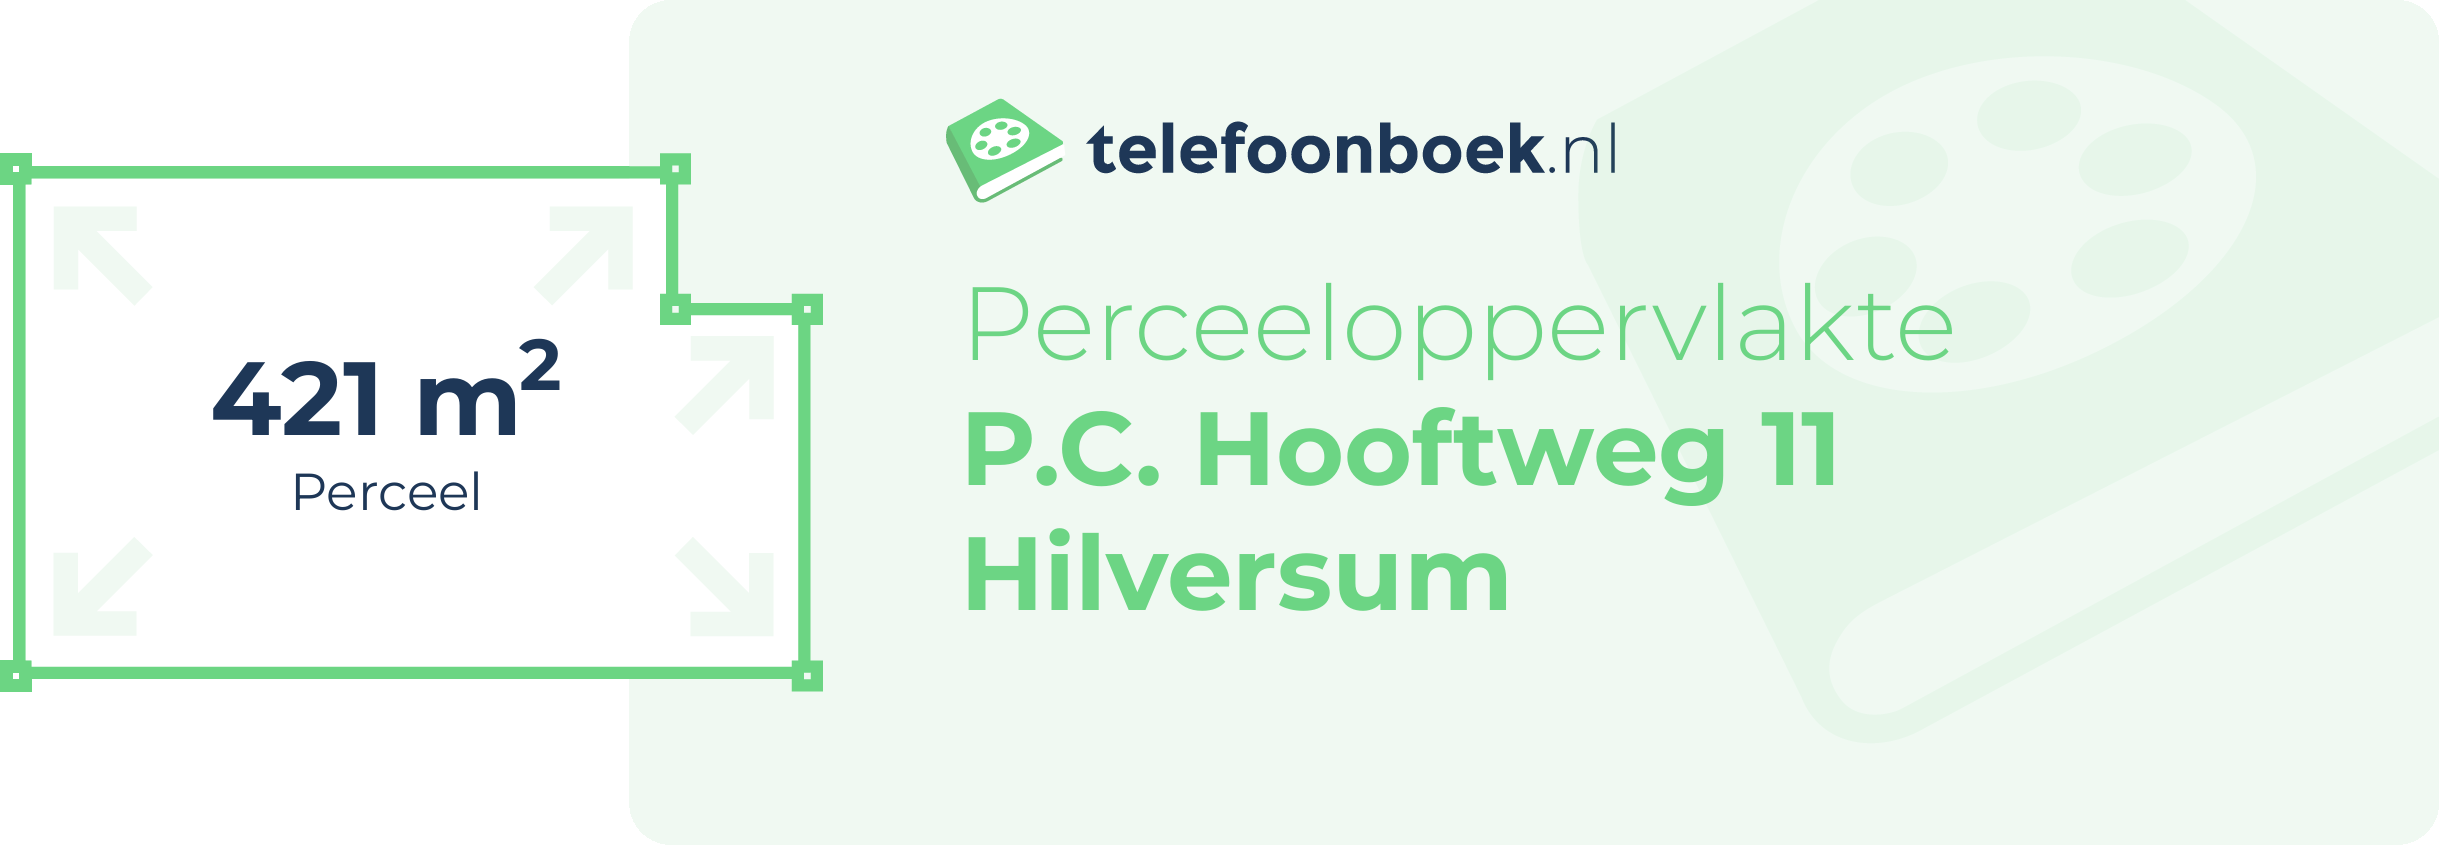 Perceeloppervlakte P.C. Hooftweg 11 Hilversum